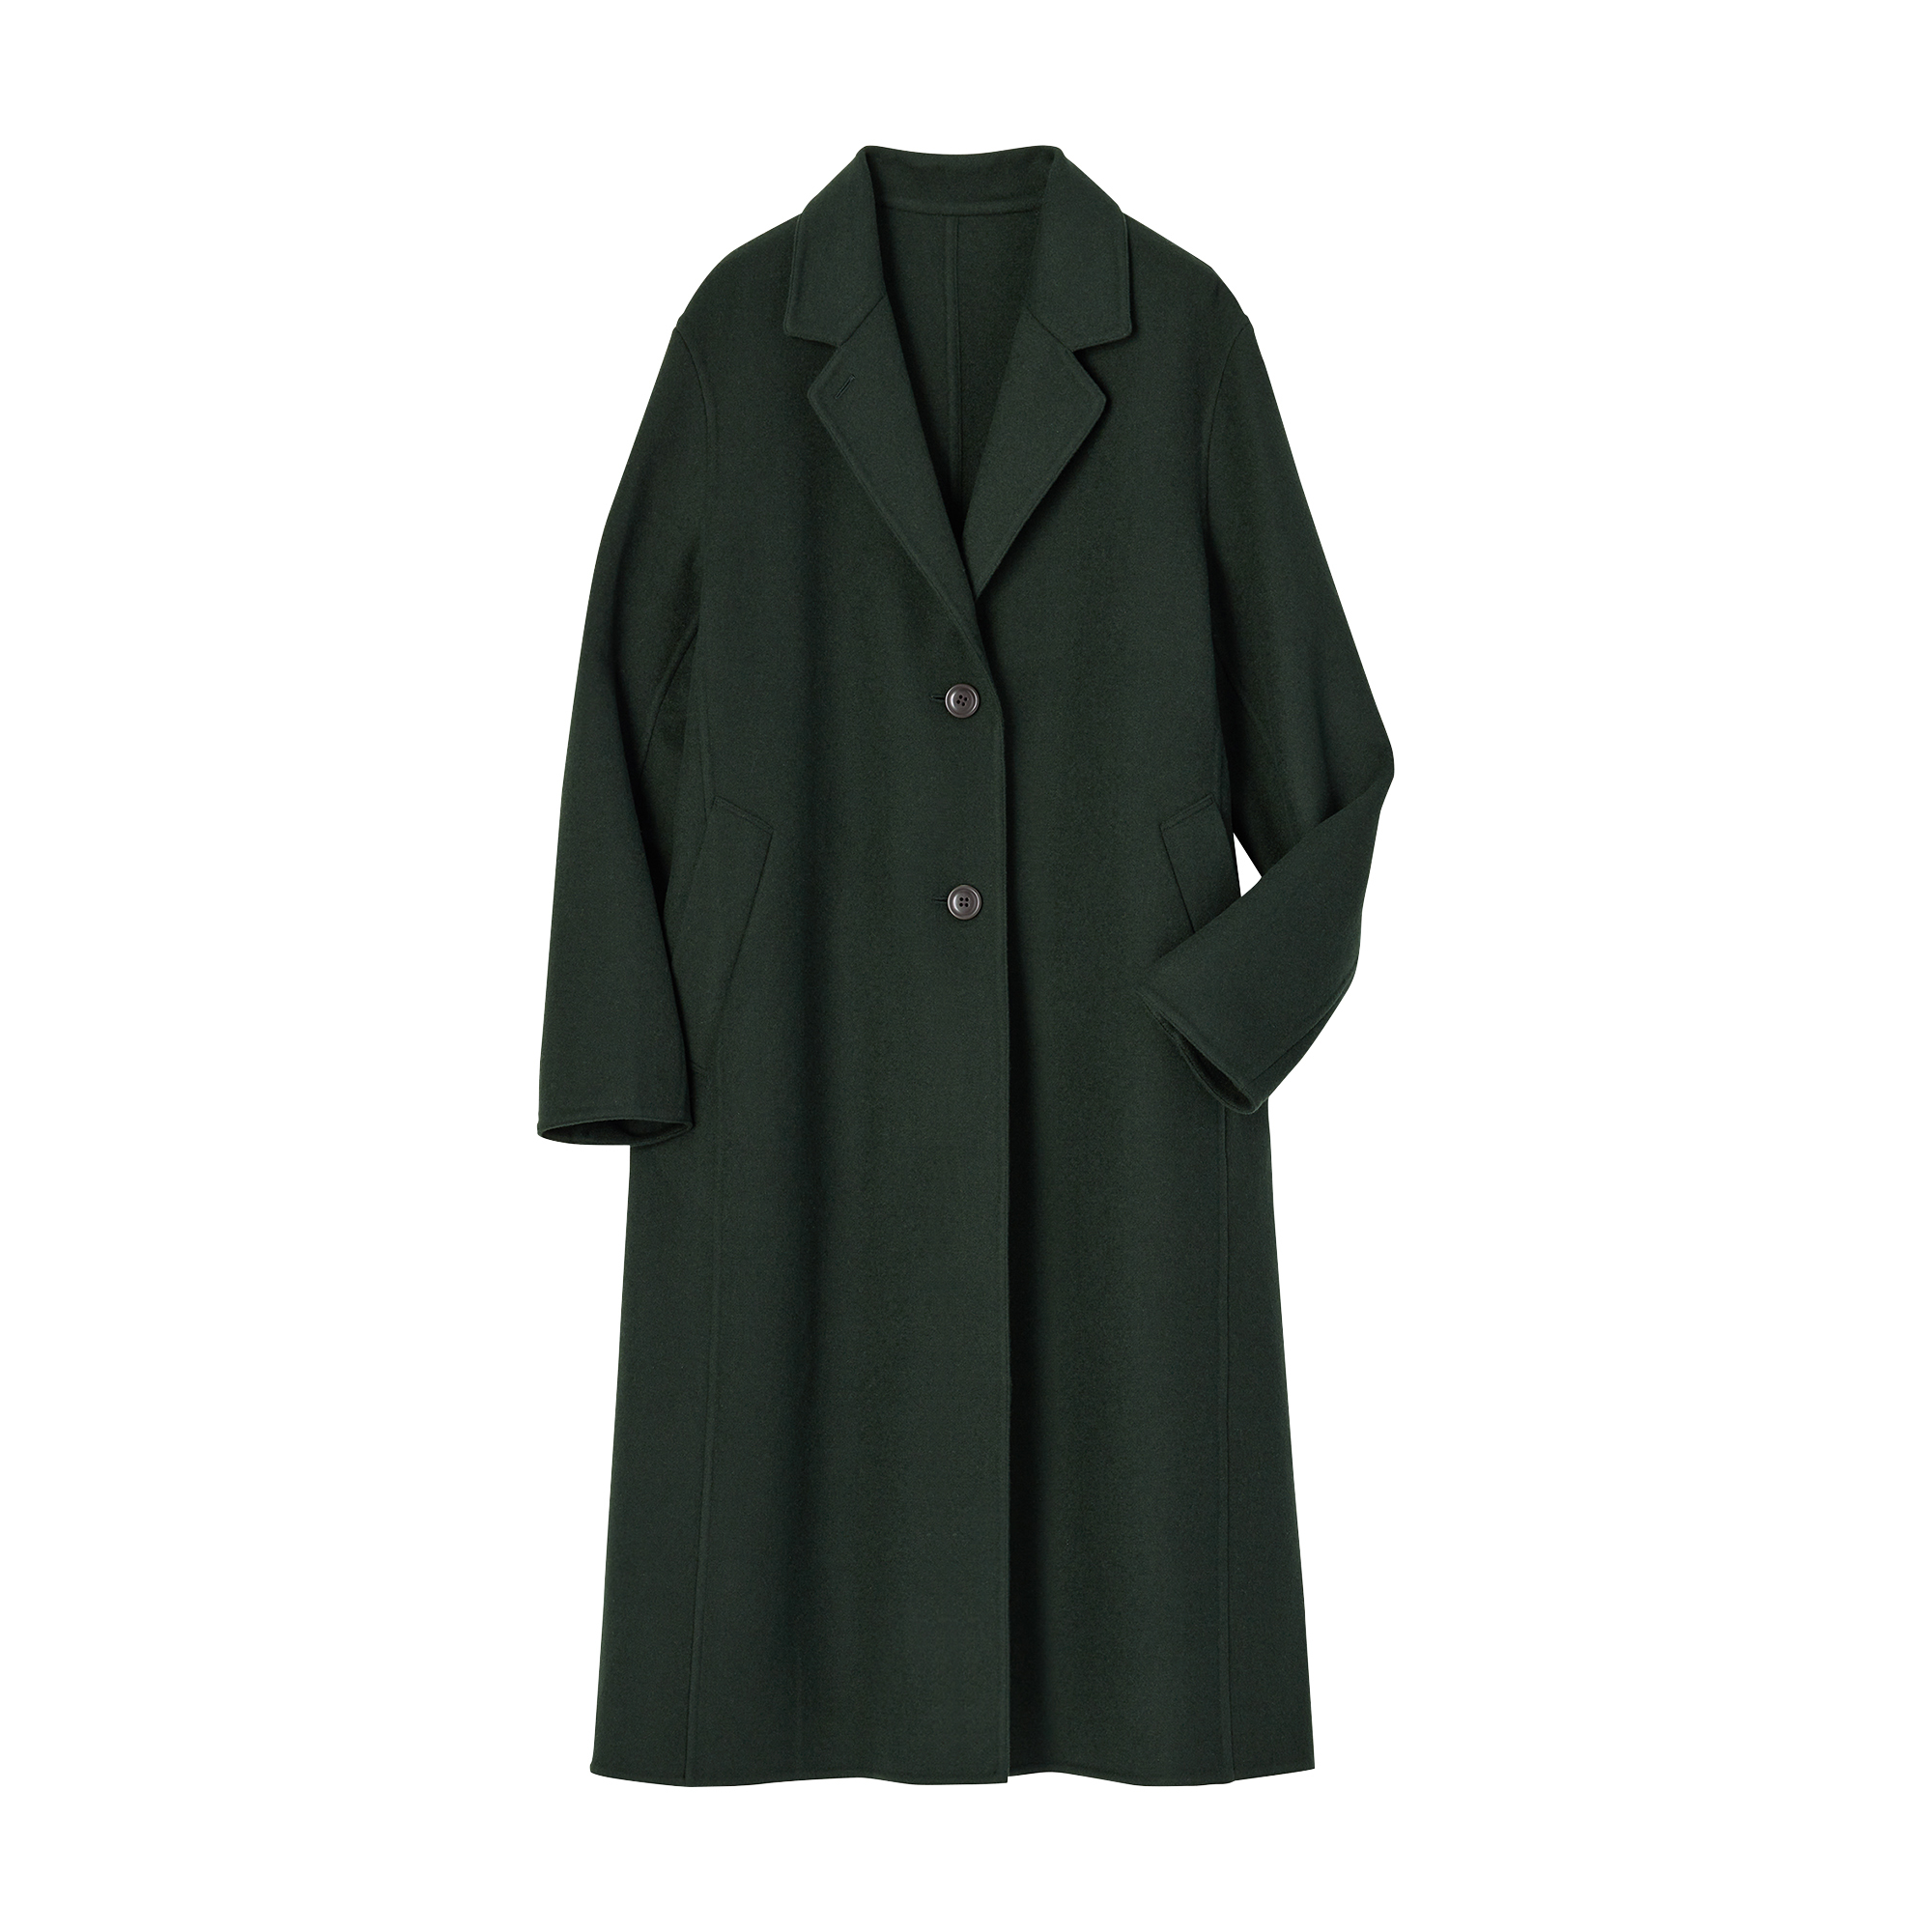 Abrigo verde. Uniqlo. (159,90 euros).